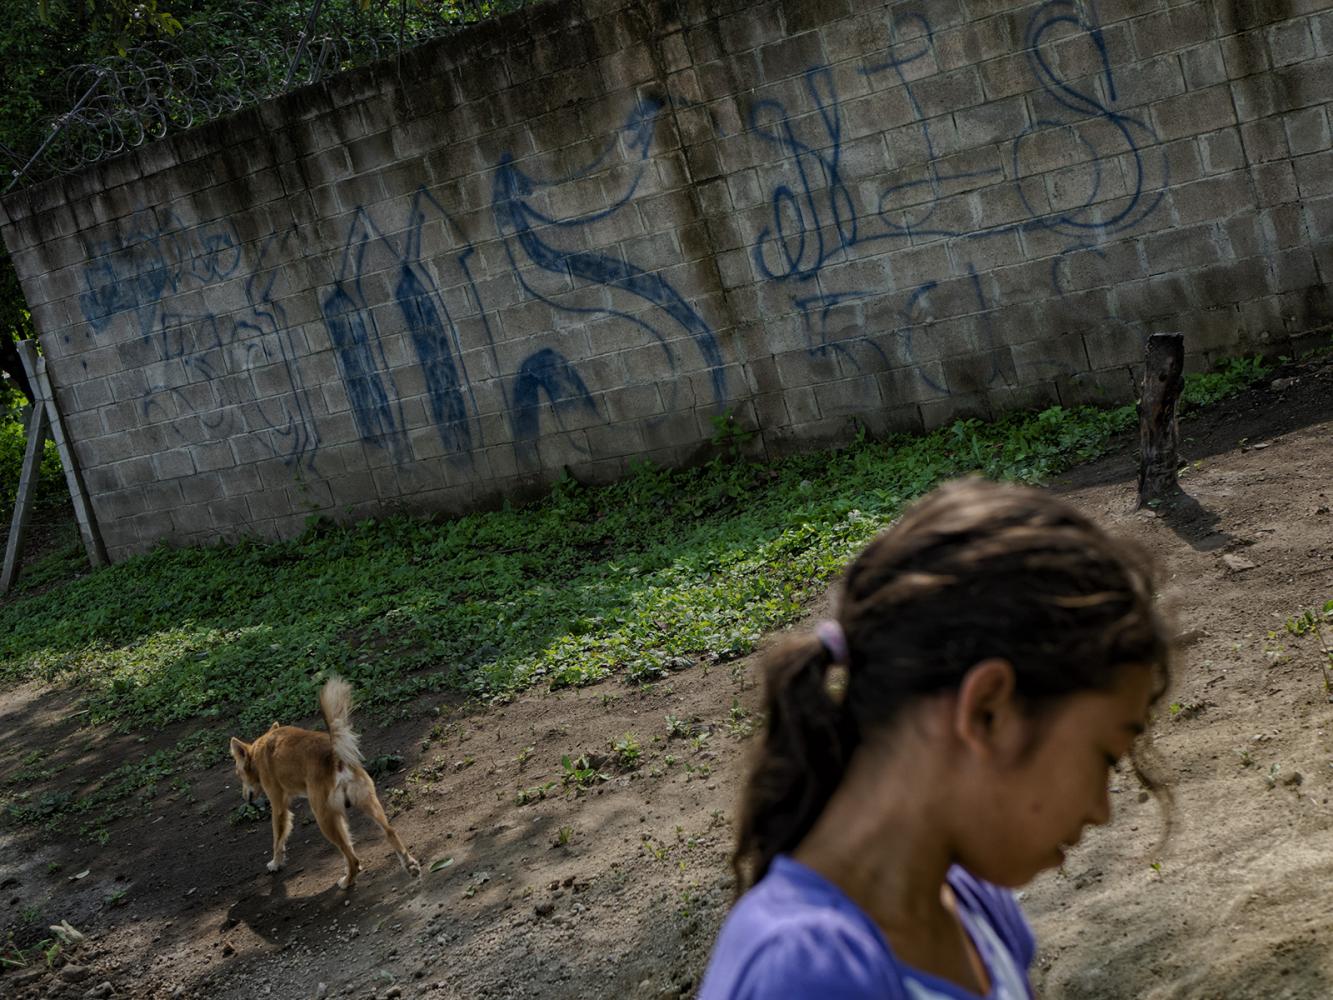 Central America - El Salvador, ... lacks access to potable water.